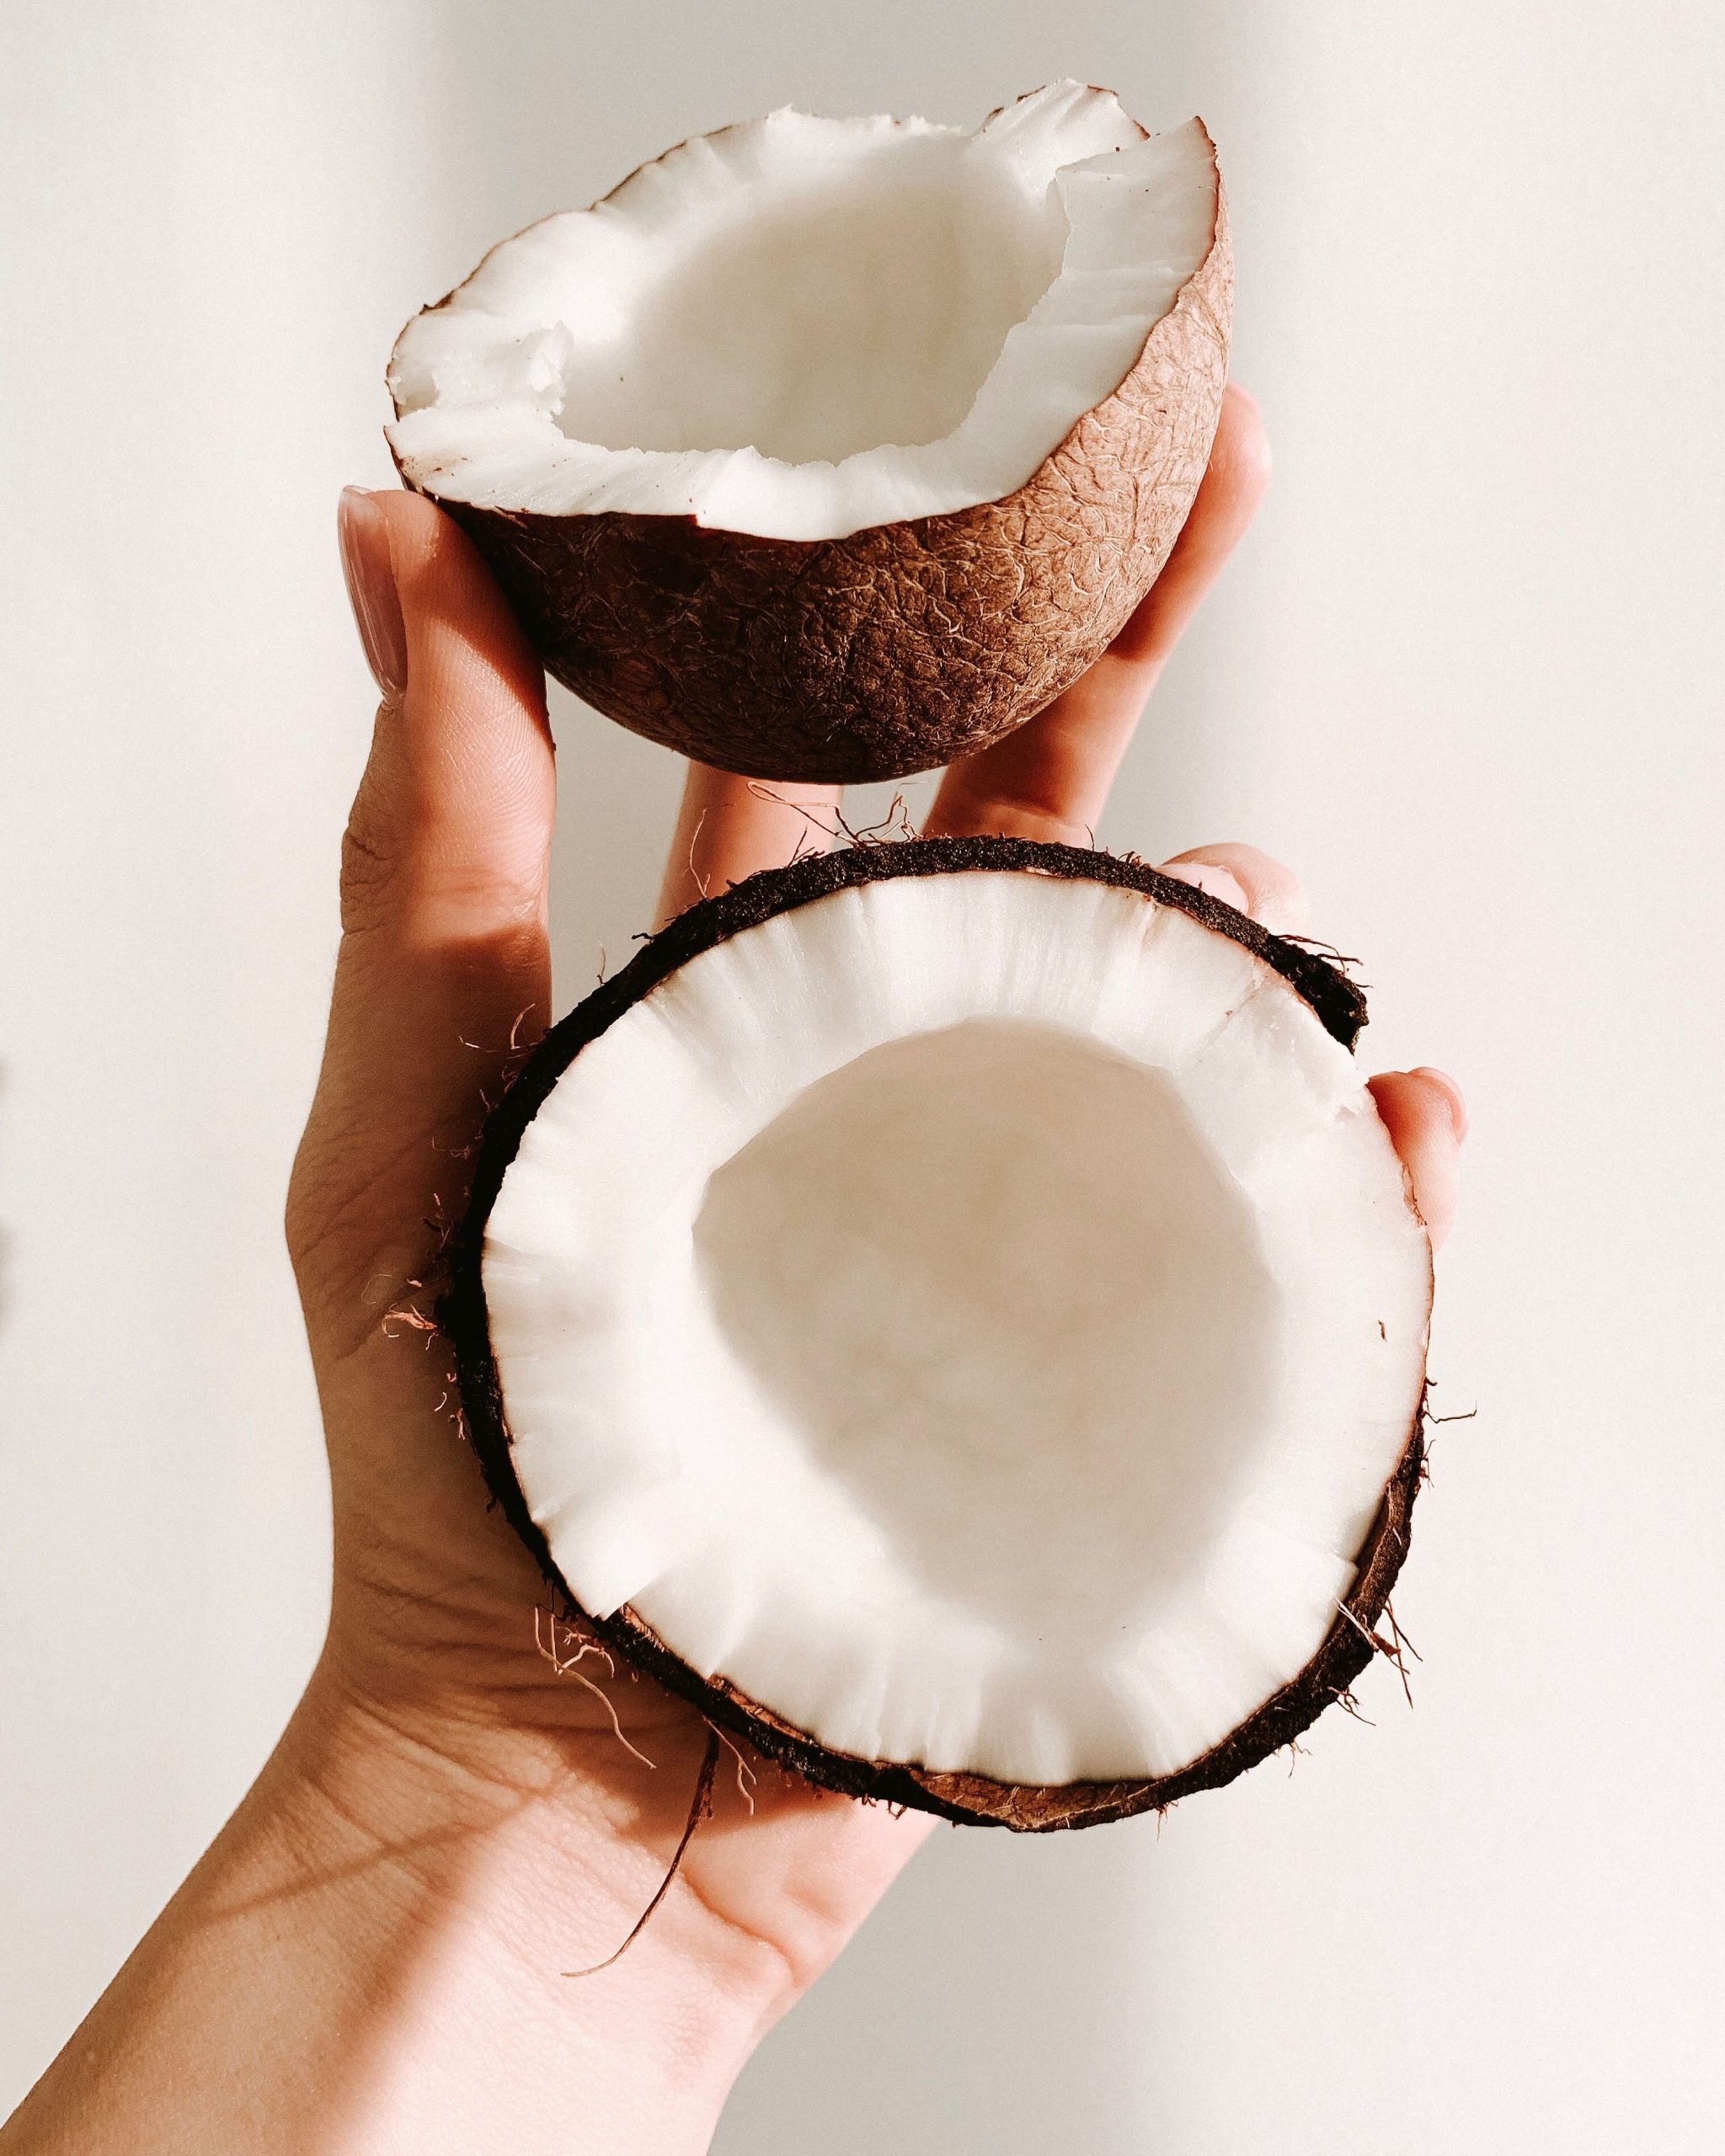 Coconut Oil Vs. Avocado Oil For Hair